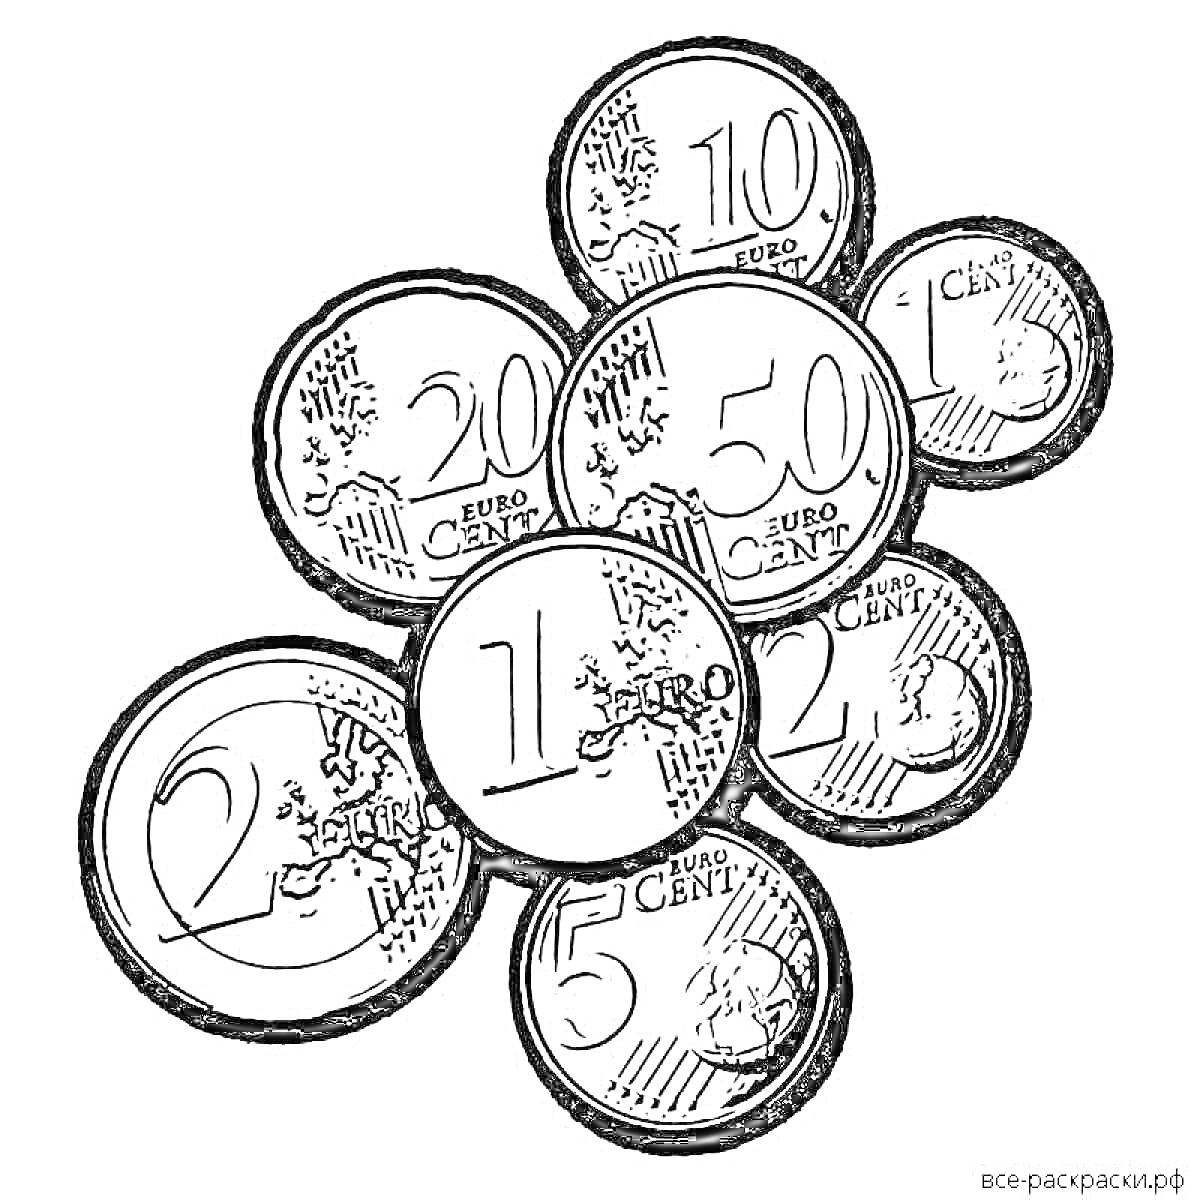 Евро монеты разных номиналов (2 Евро, 1 Евро, 50 центов, 20 центов, 10 центов, 5 центов, 2 цента, 1 цент)